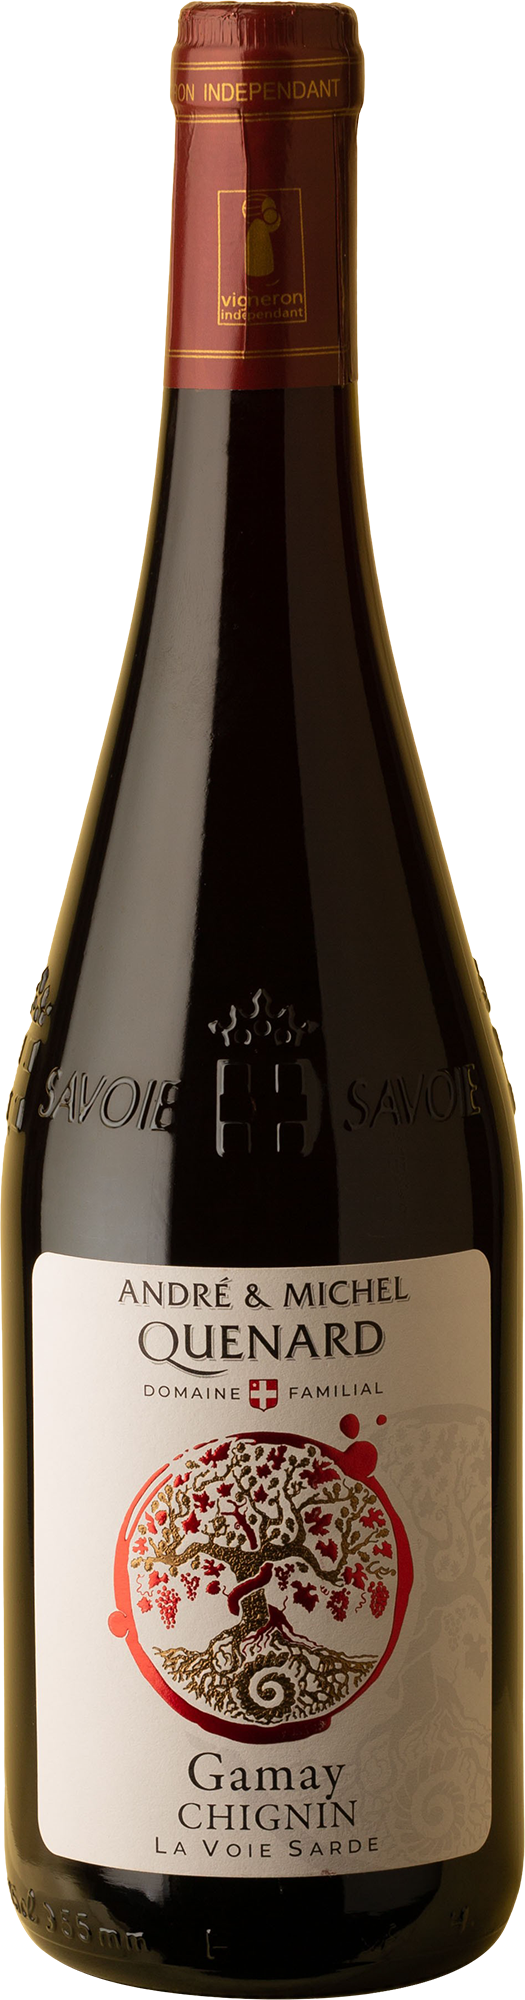 Quenard - Chignin Savoie Gamay 2020 Red Wine